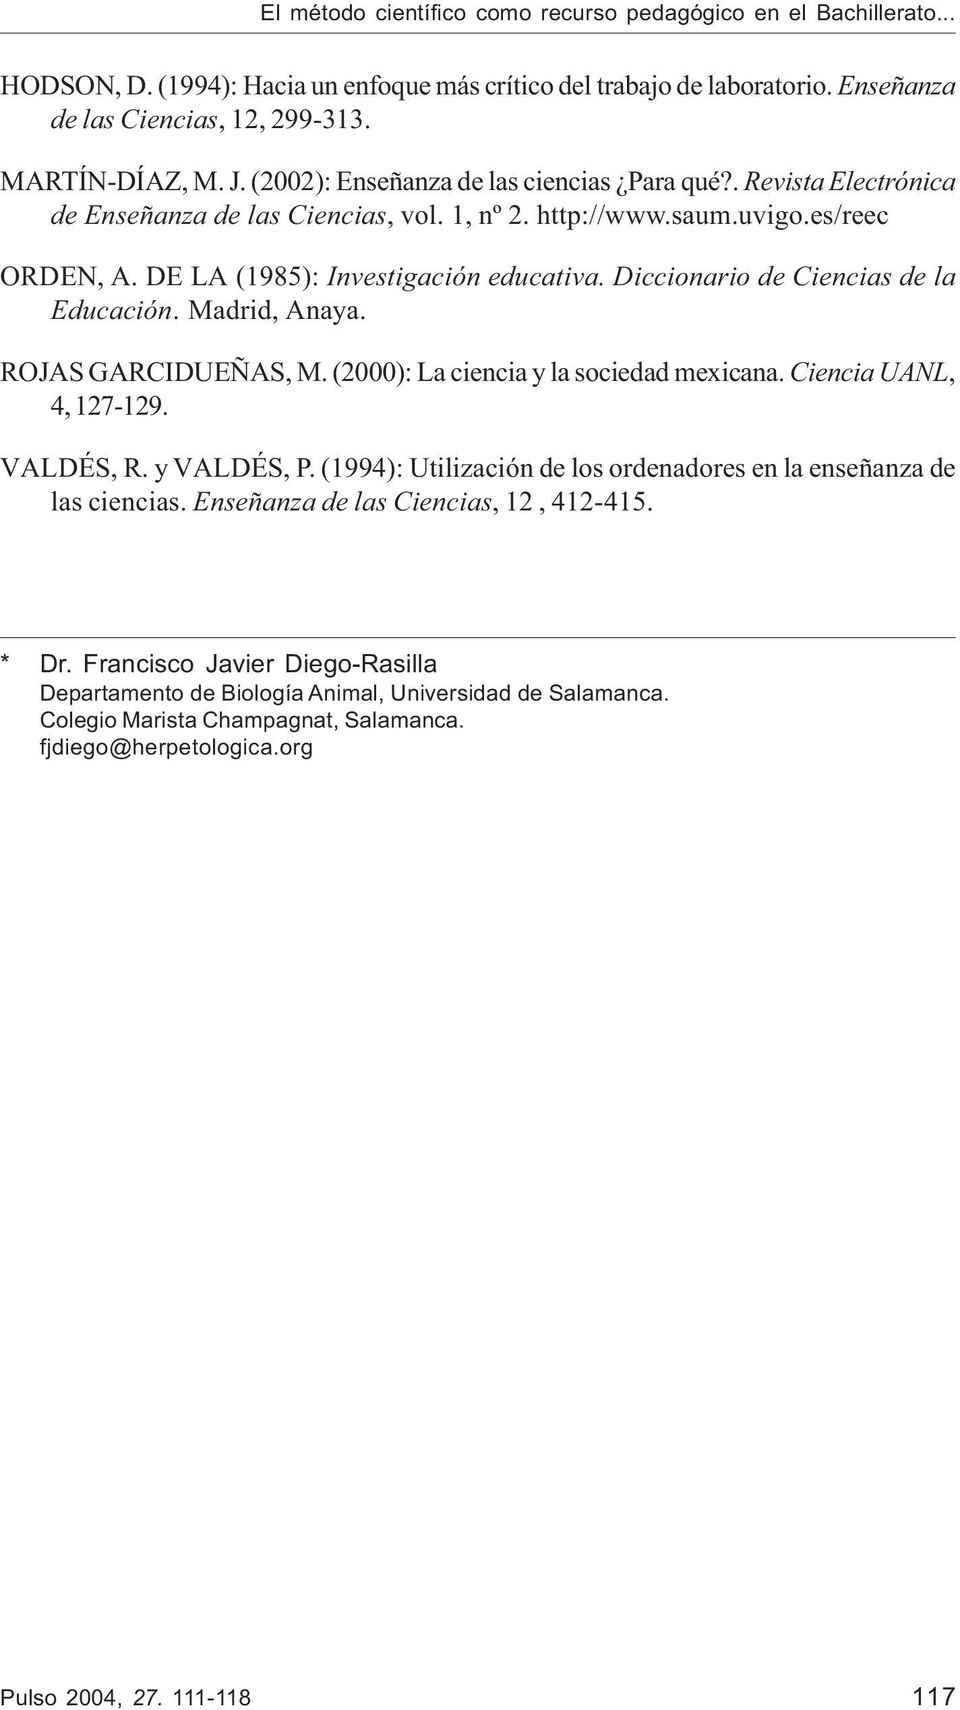 Diccionario de Ciencias de la Educación. Madrid, Anaya. ROJAS GARCIDUEÑAS, M. (2000): La ciencia y la sociedad mexicana. Ciencia UANL, 4, 127-129. VALDÉS, R. y VALDÉS, P.